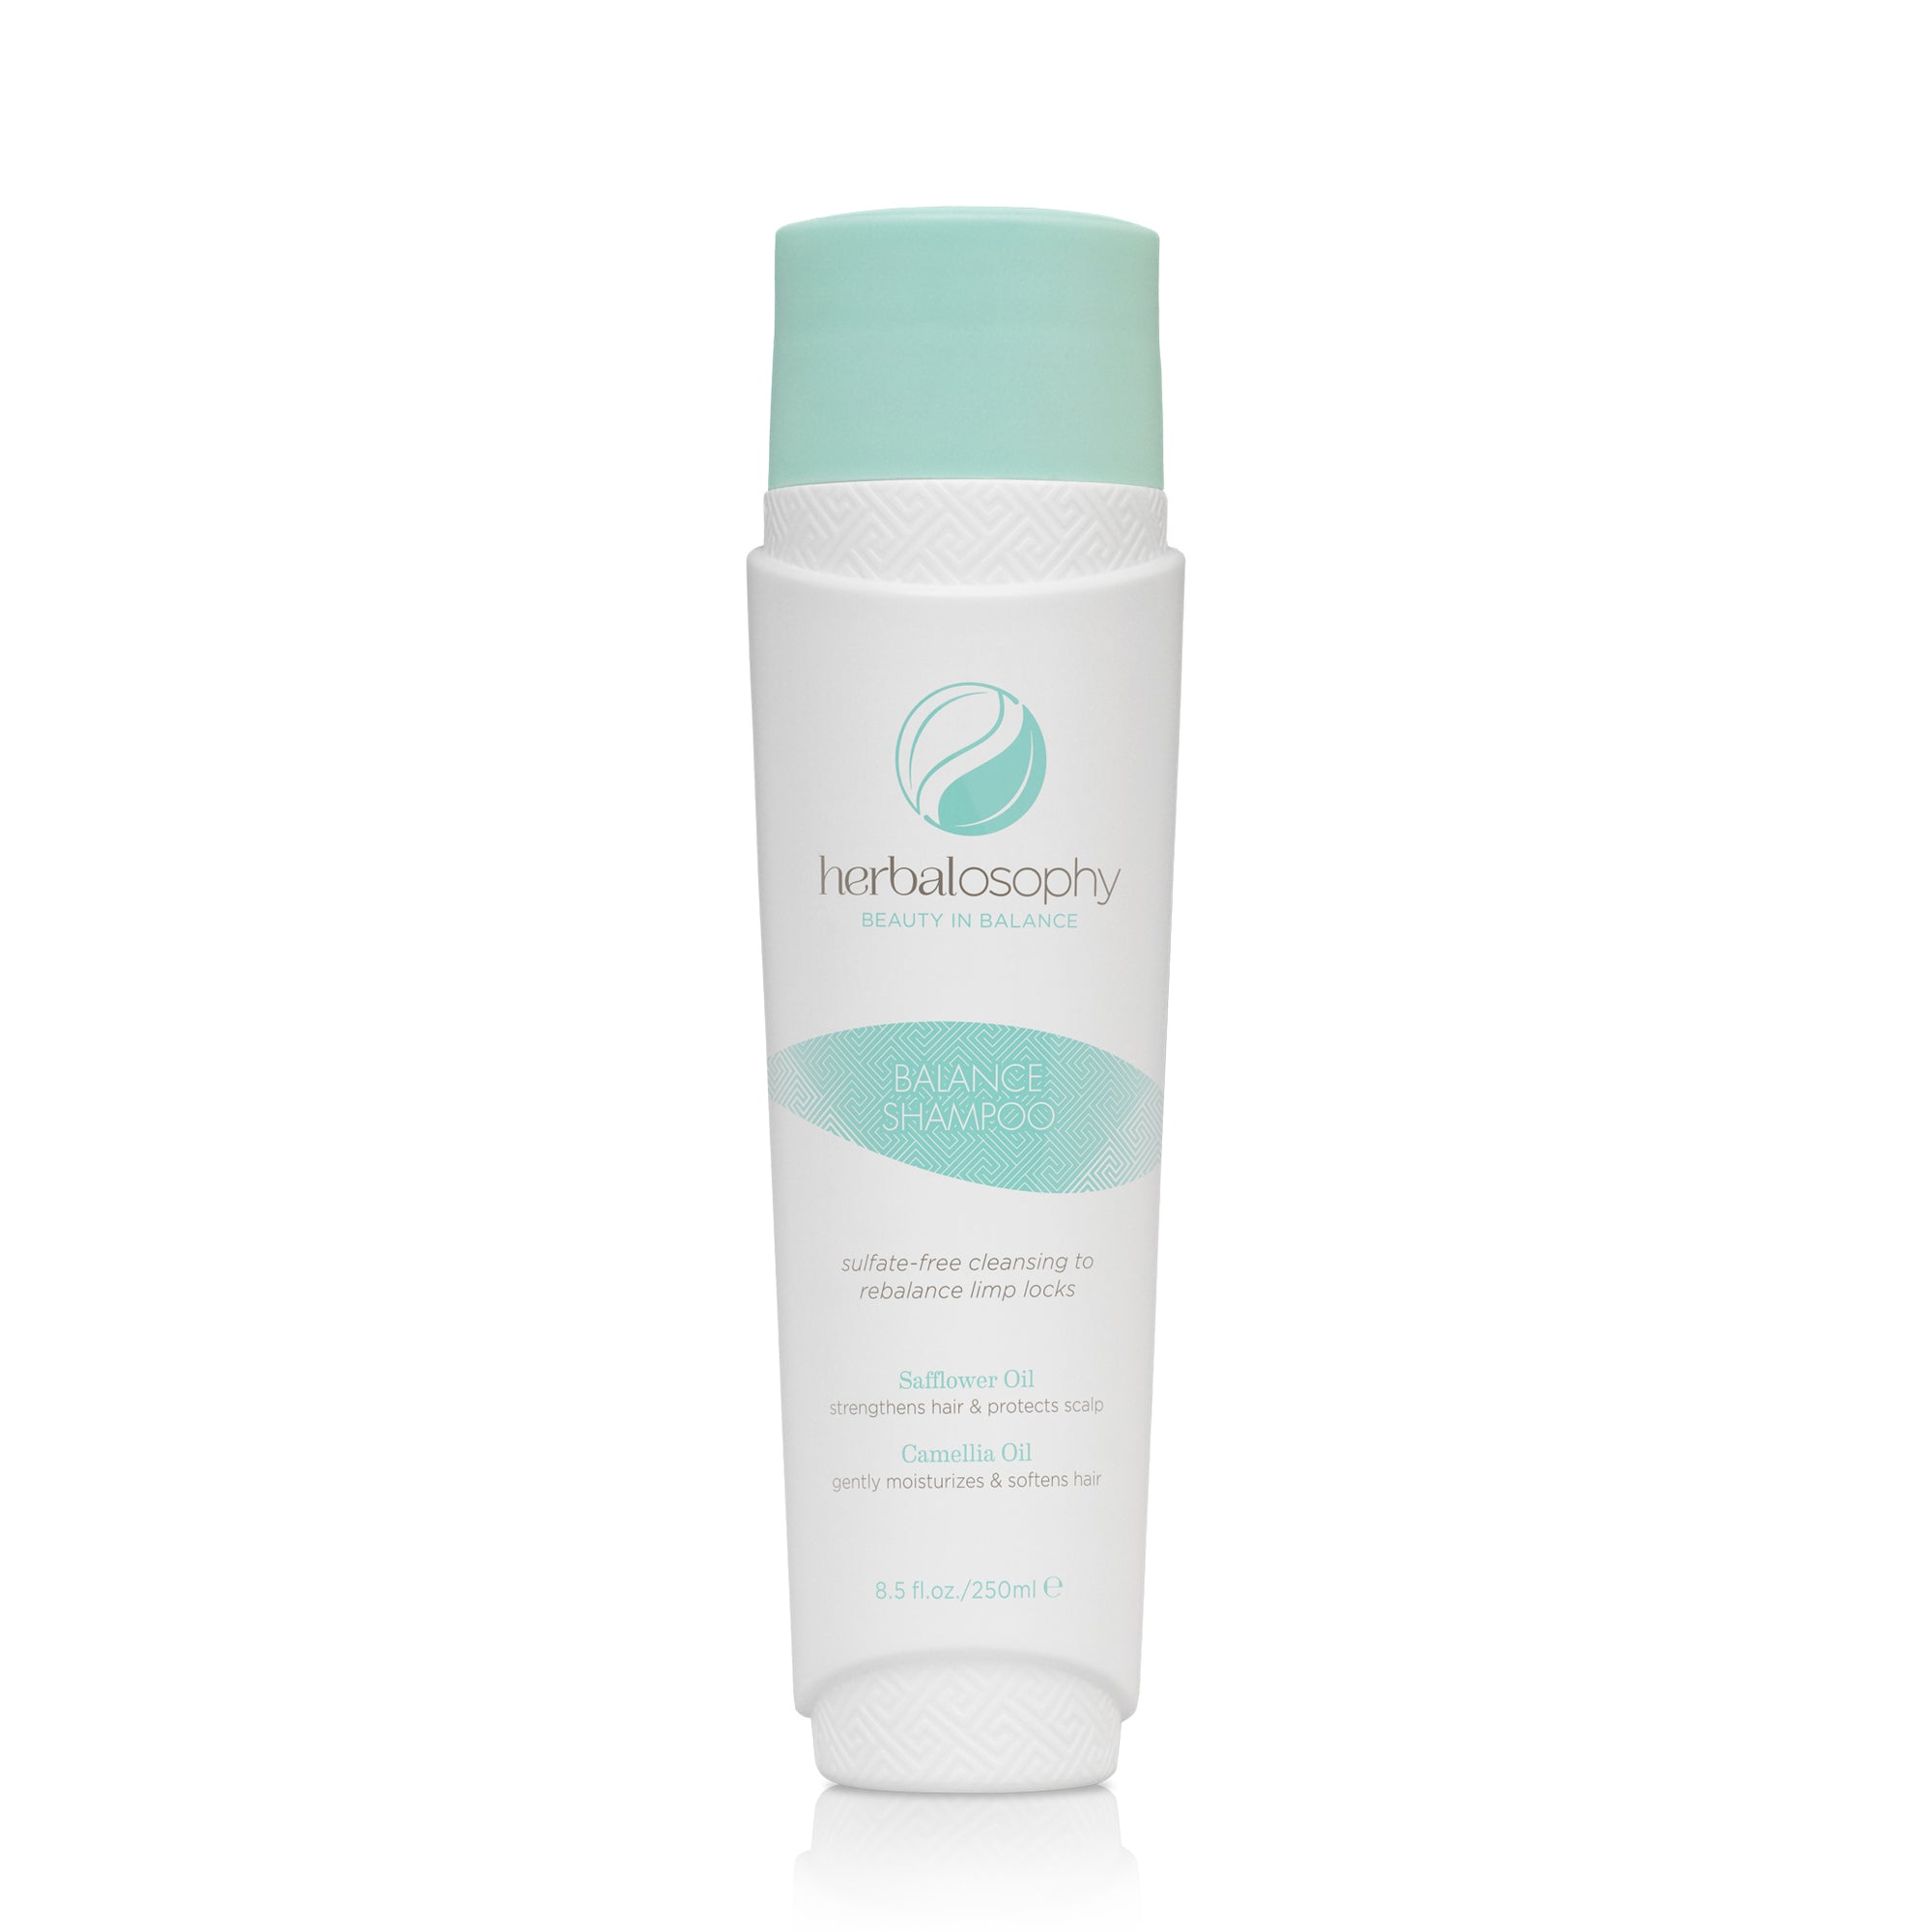 Herbalosophy Balance Shampoo 8.5oz bottle front